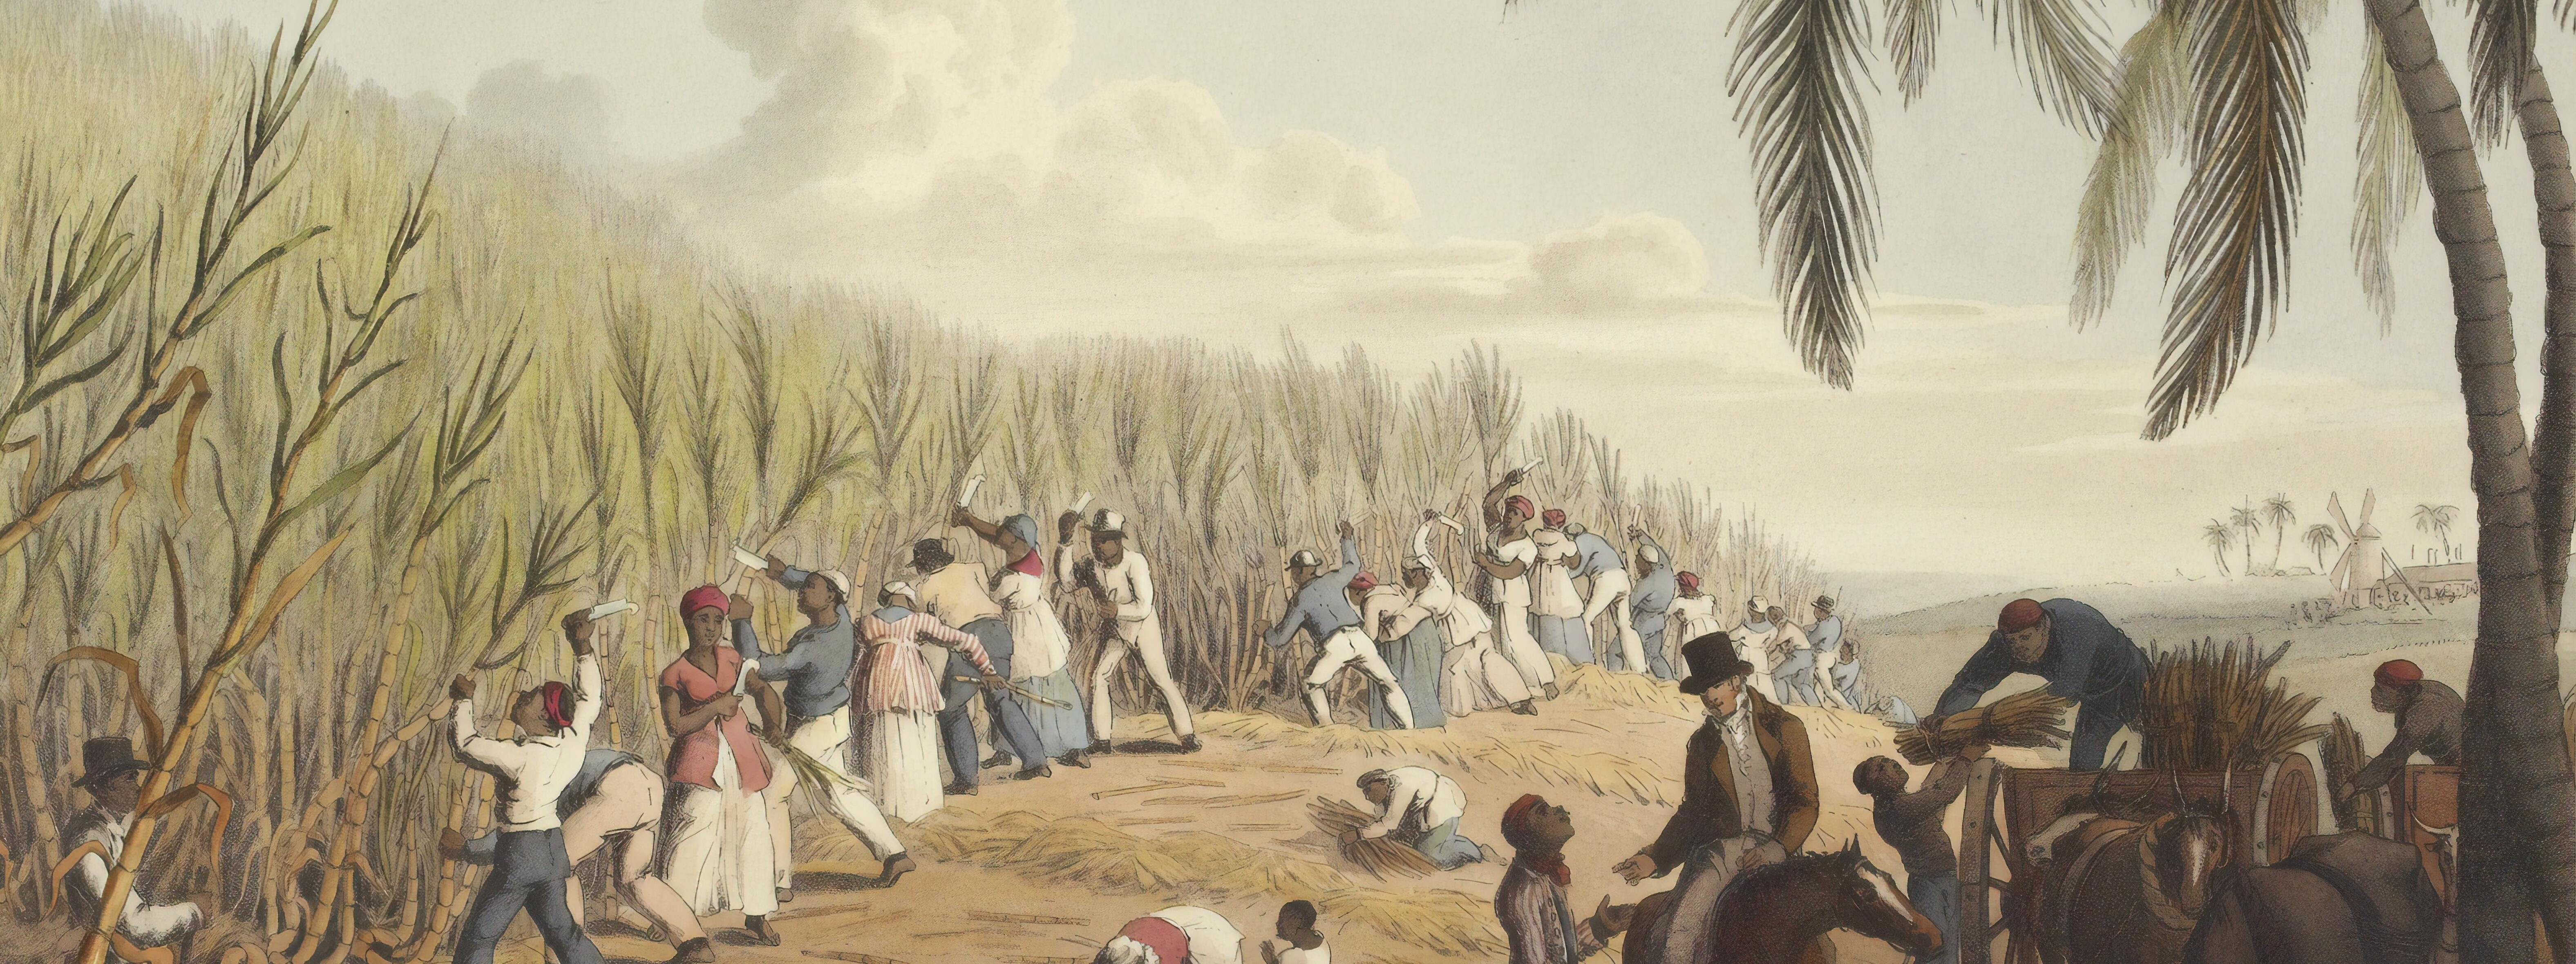 Vemos una ilustración mostrando la situación de esclavitud en la antigüedad,  un grupo de personas está trabajando en un campo, vemos personas que fiscalizan su trabajo.